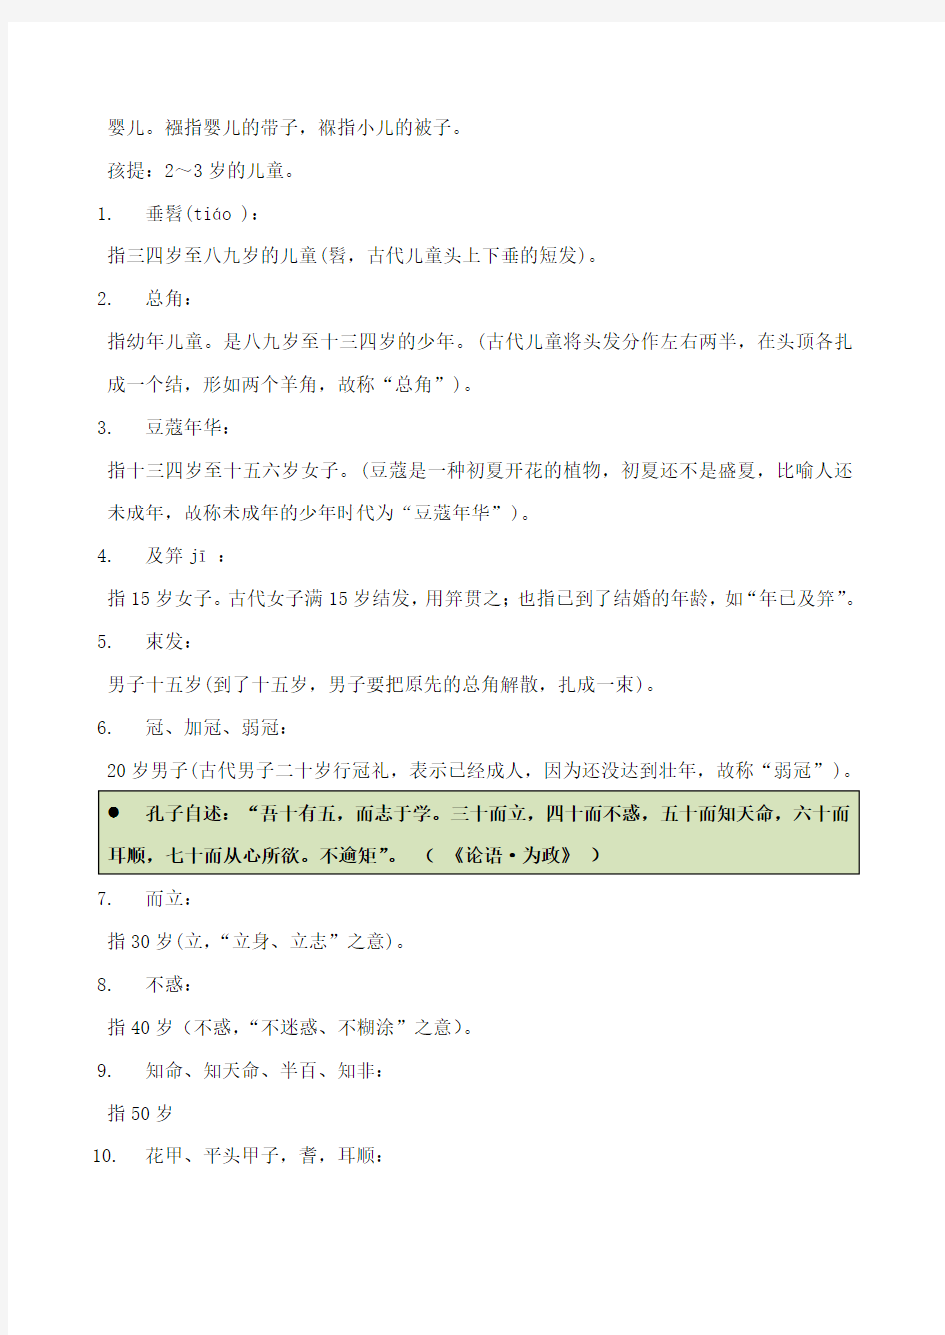 初中语文 古代文化常识 年龄常见称谓练习题(含答案)